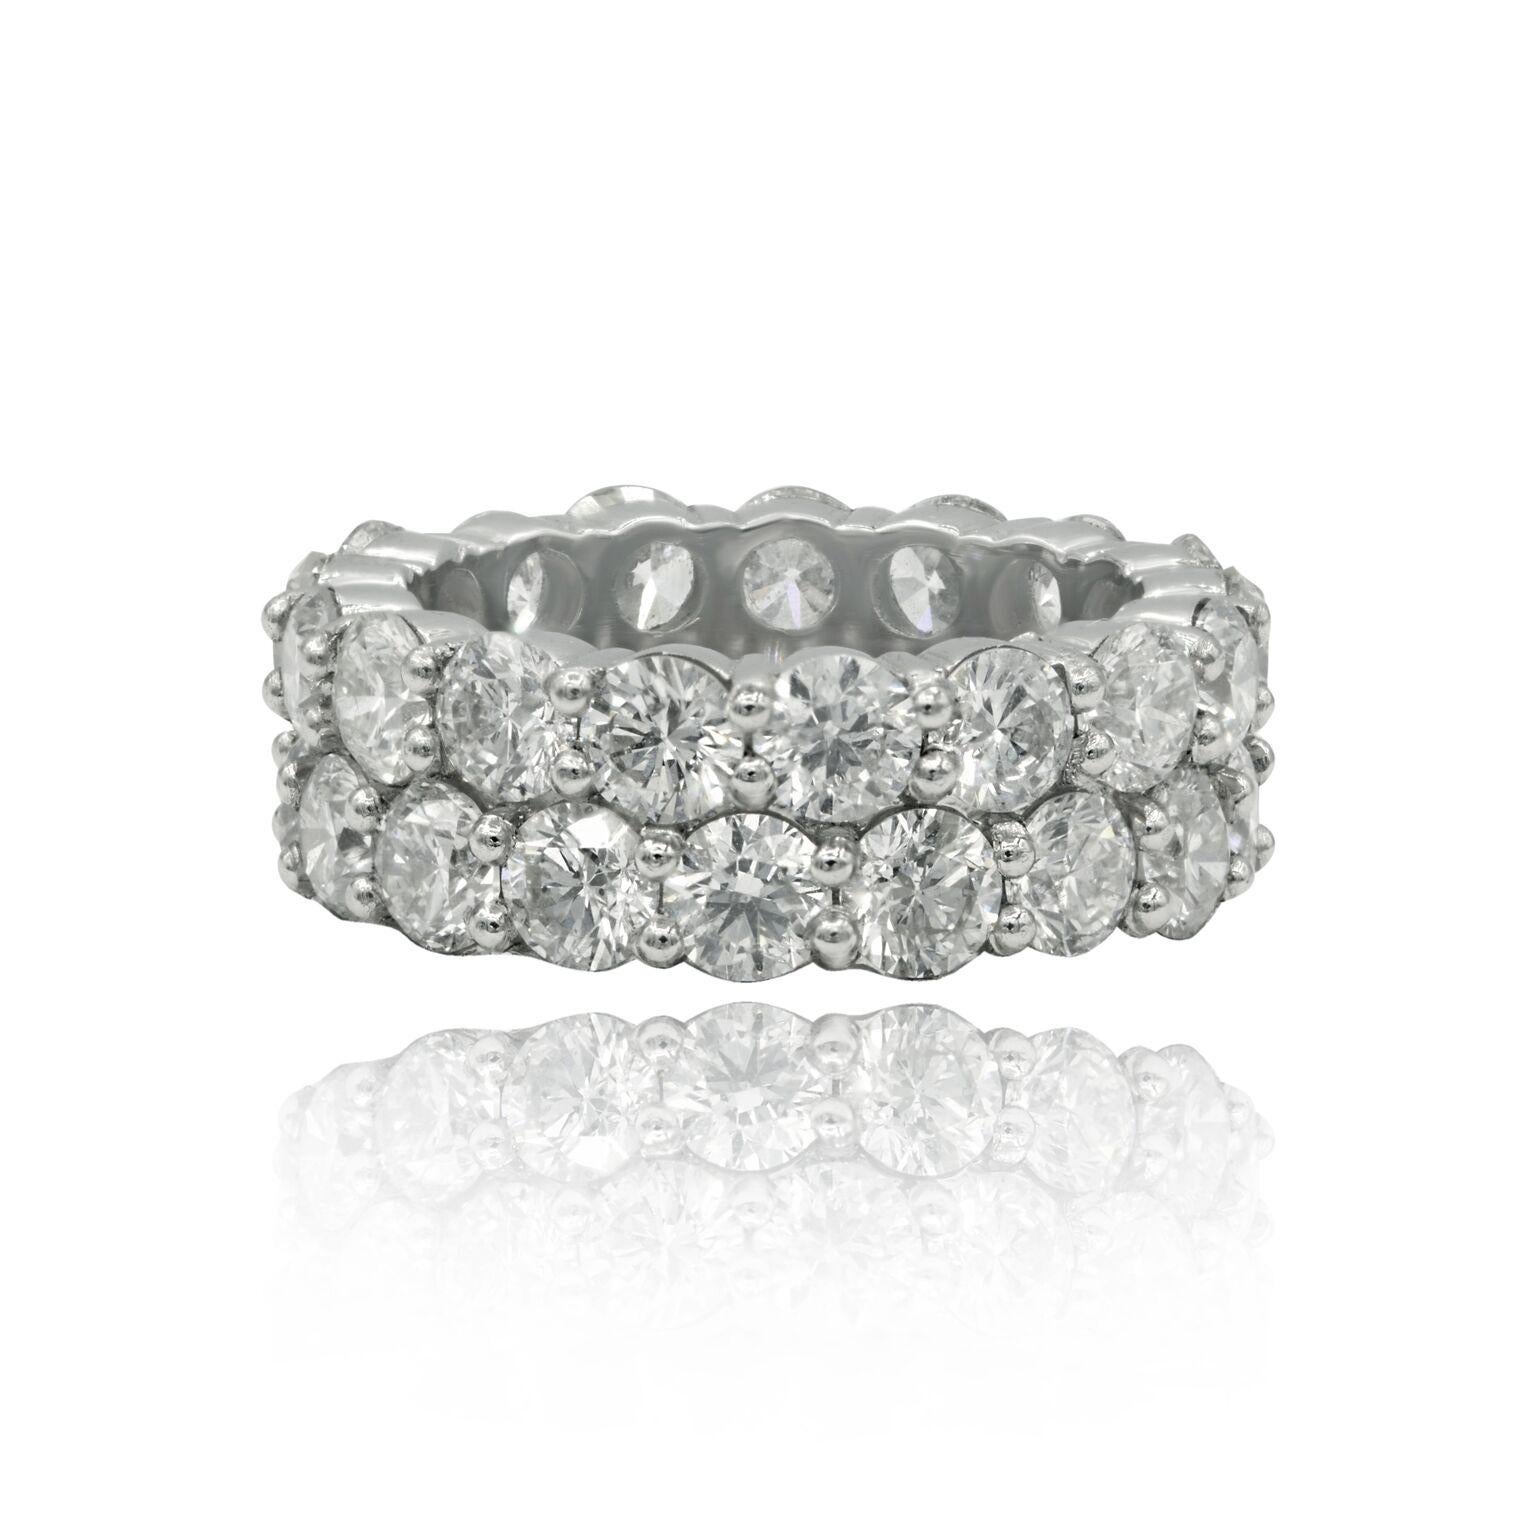 Bracelet en platine à deux rangs de diamants de 11,71 crt.  de diamants ronds de taille brillante.
A&M est un fournisseur de premier plan de bijoux fins de qualité supérieure depuis plus de 35 ans.
Diana M-One est un magasin unique pour tous vos